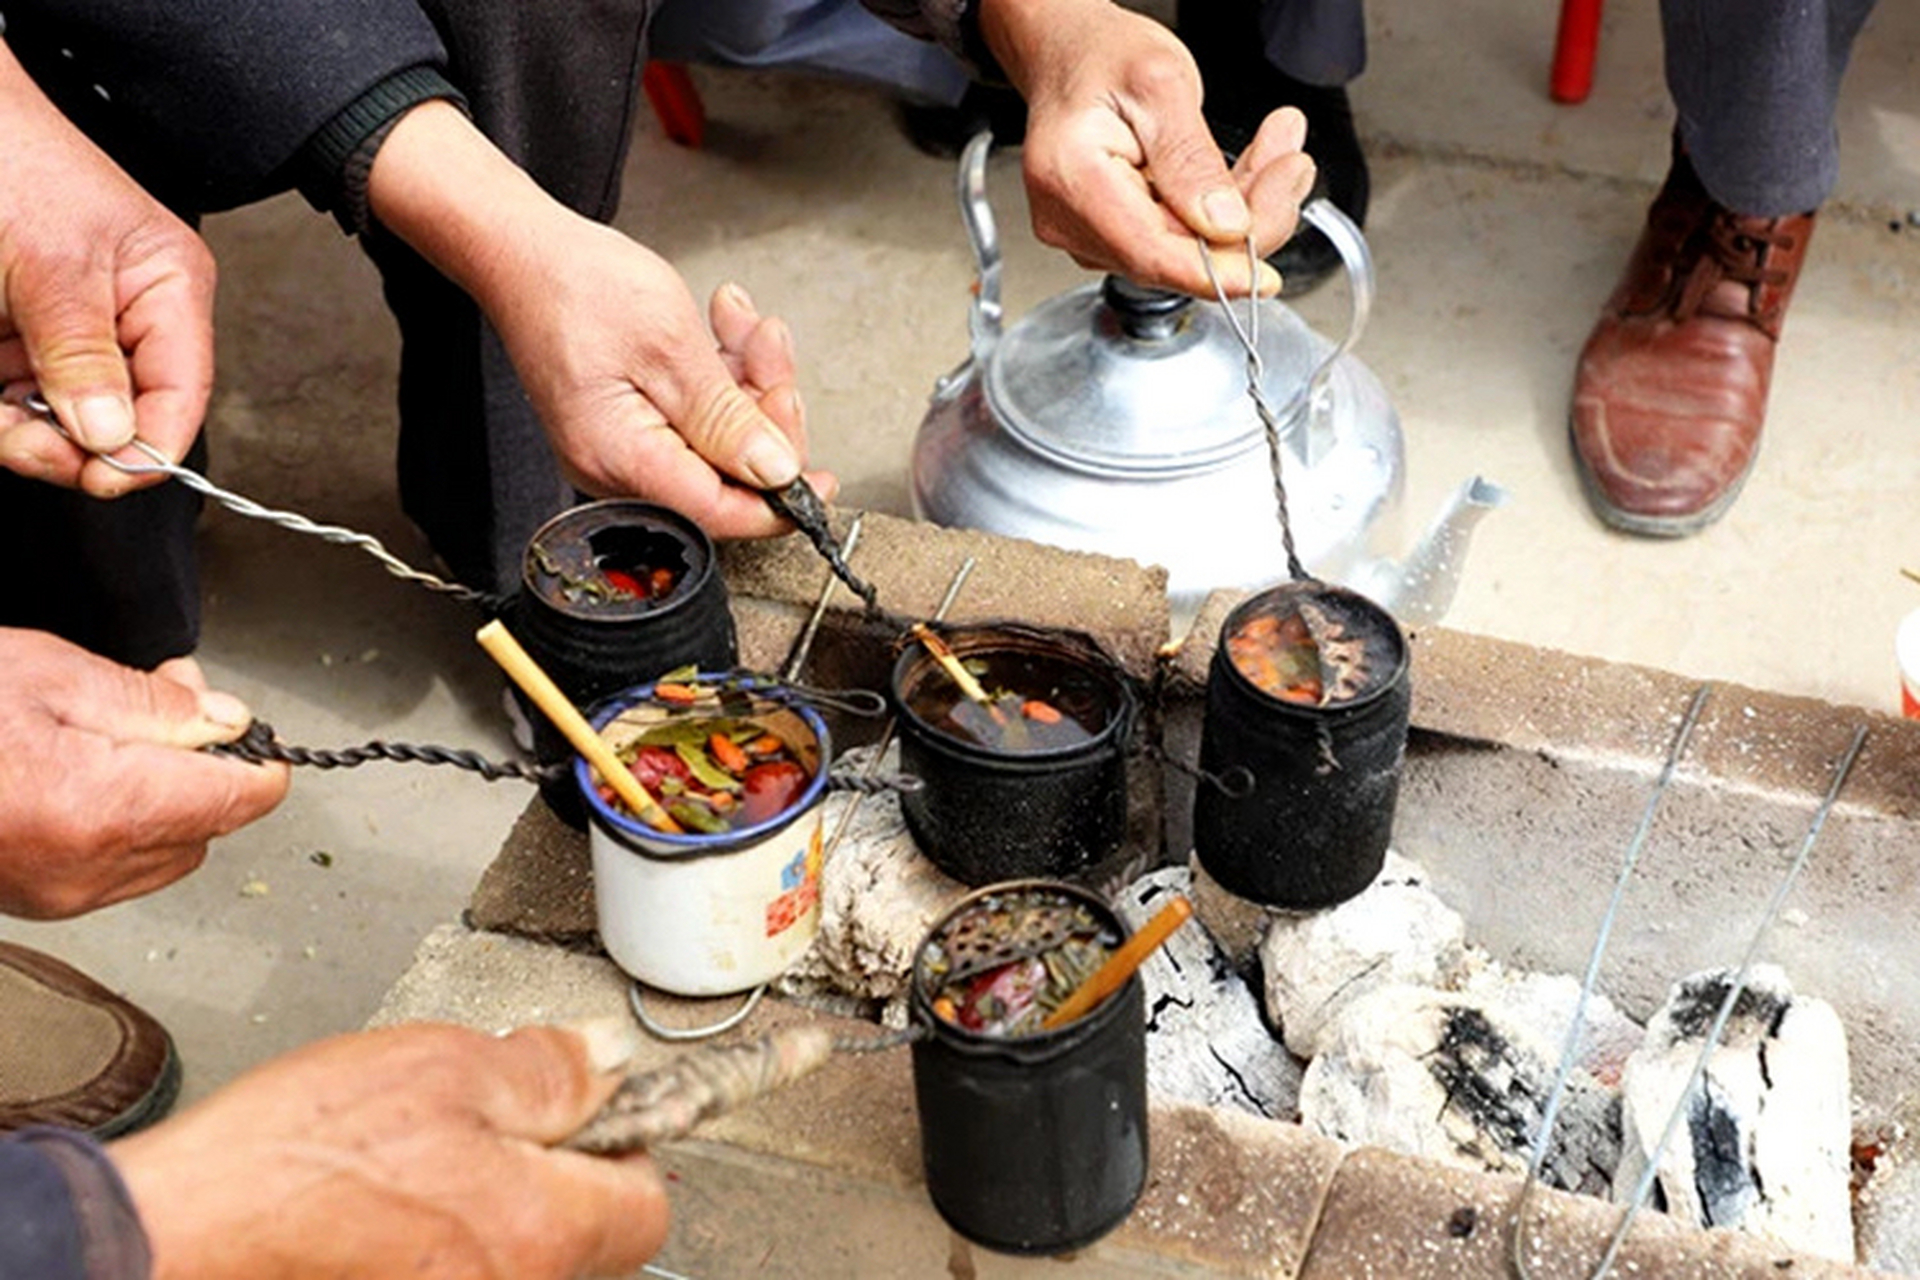 甘肃罐罐茶文化短句图片